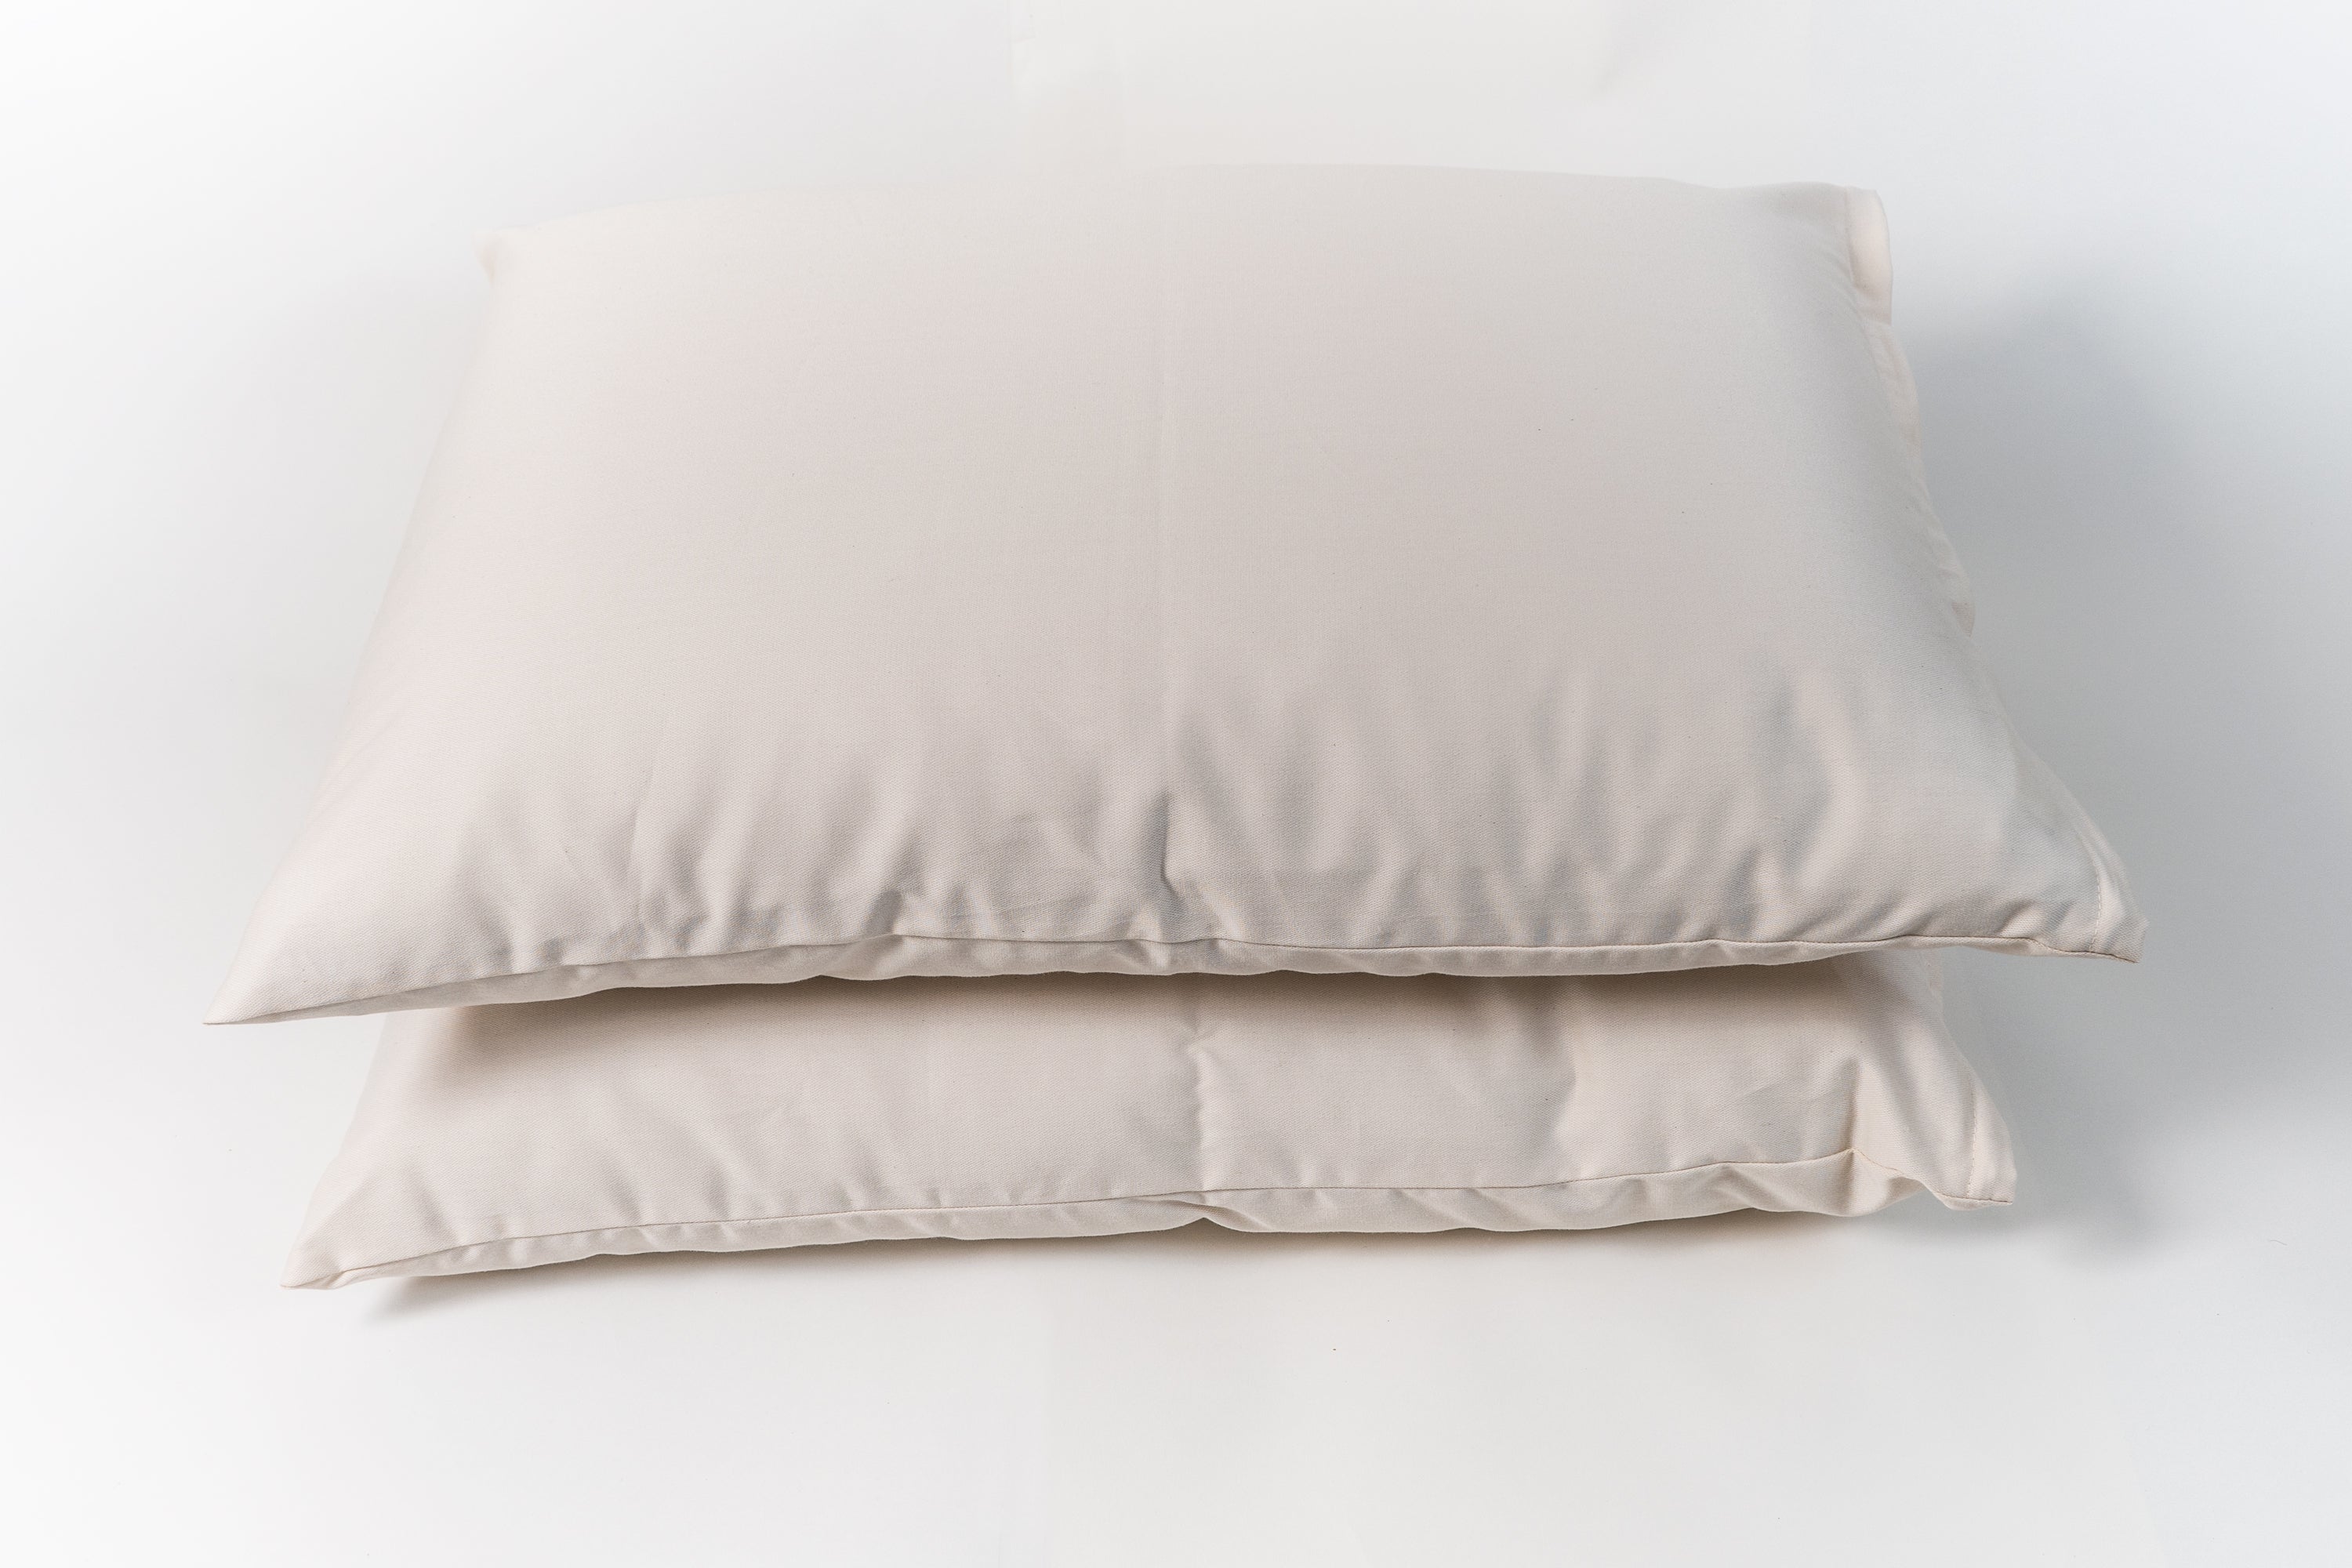 Wool Pillows - Natural Wool Filled Pillows